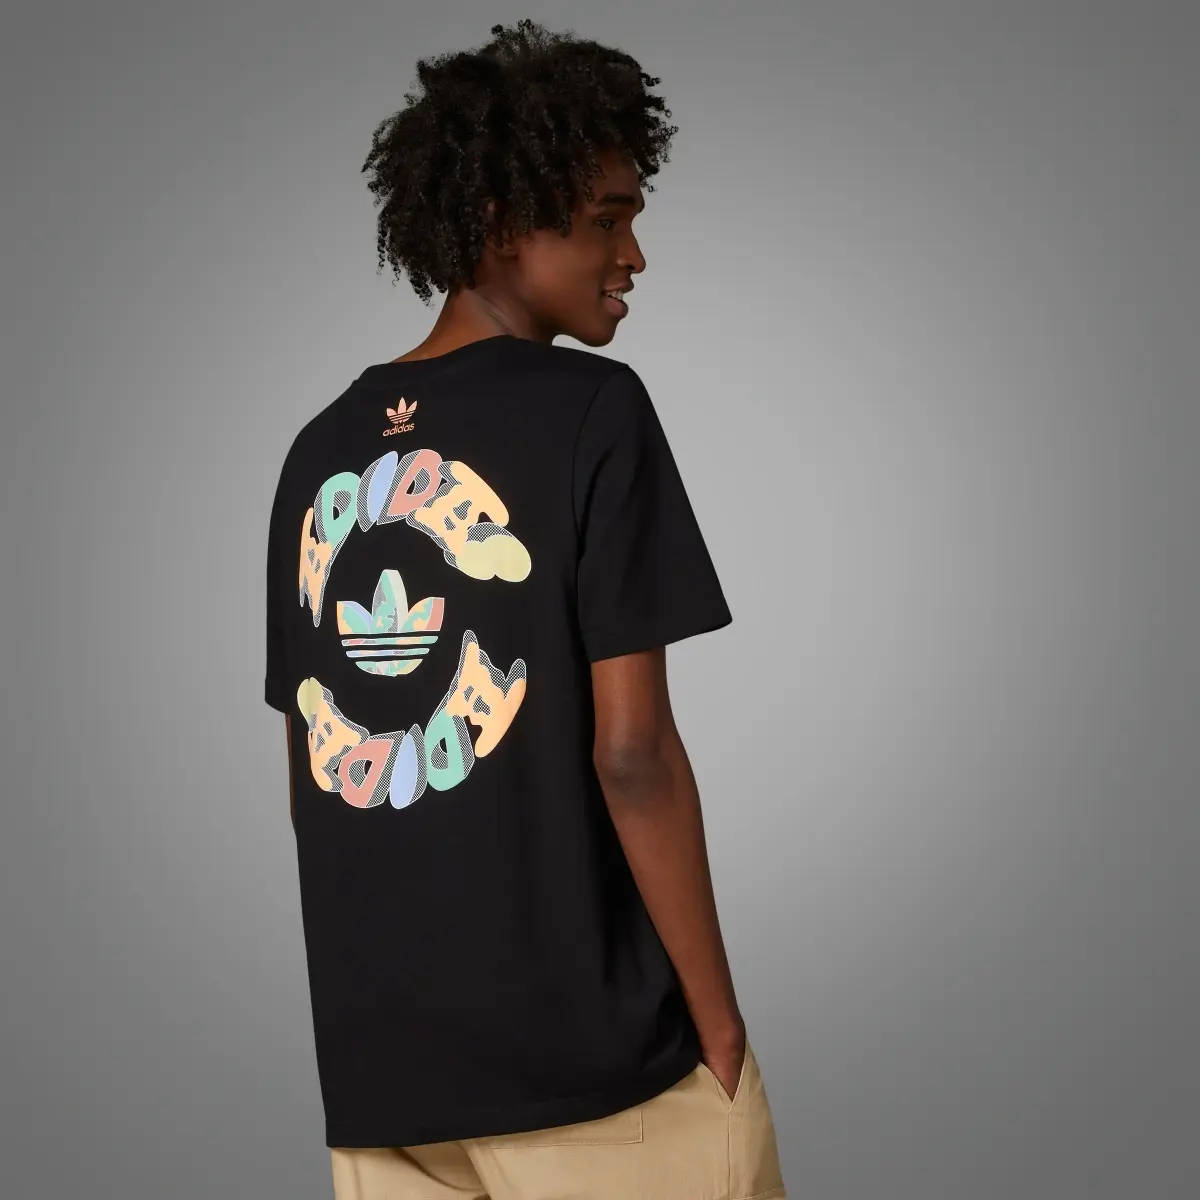 Adidas Camiseta Enjoy Summer Front/Back Graphic. 2